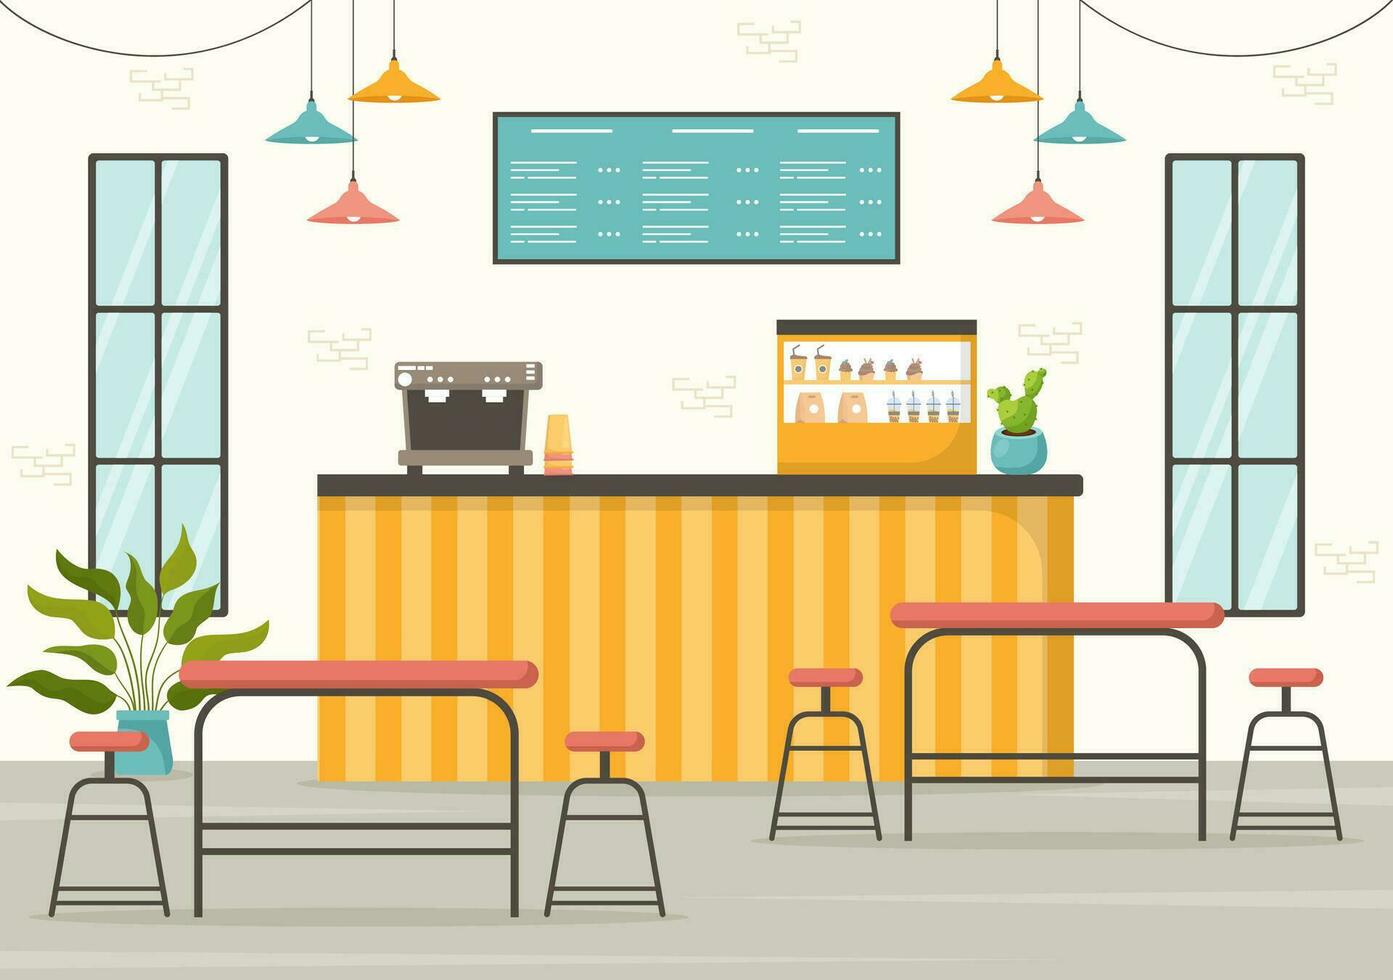 Kafé vektor illustration av interiör med bar stå, tabell och fåtöljer i platt tecknad serie hand dragen landning sida restaurang bakgrund mallar